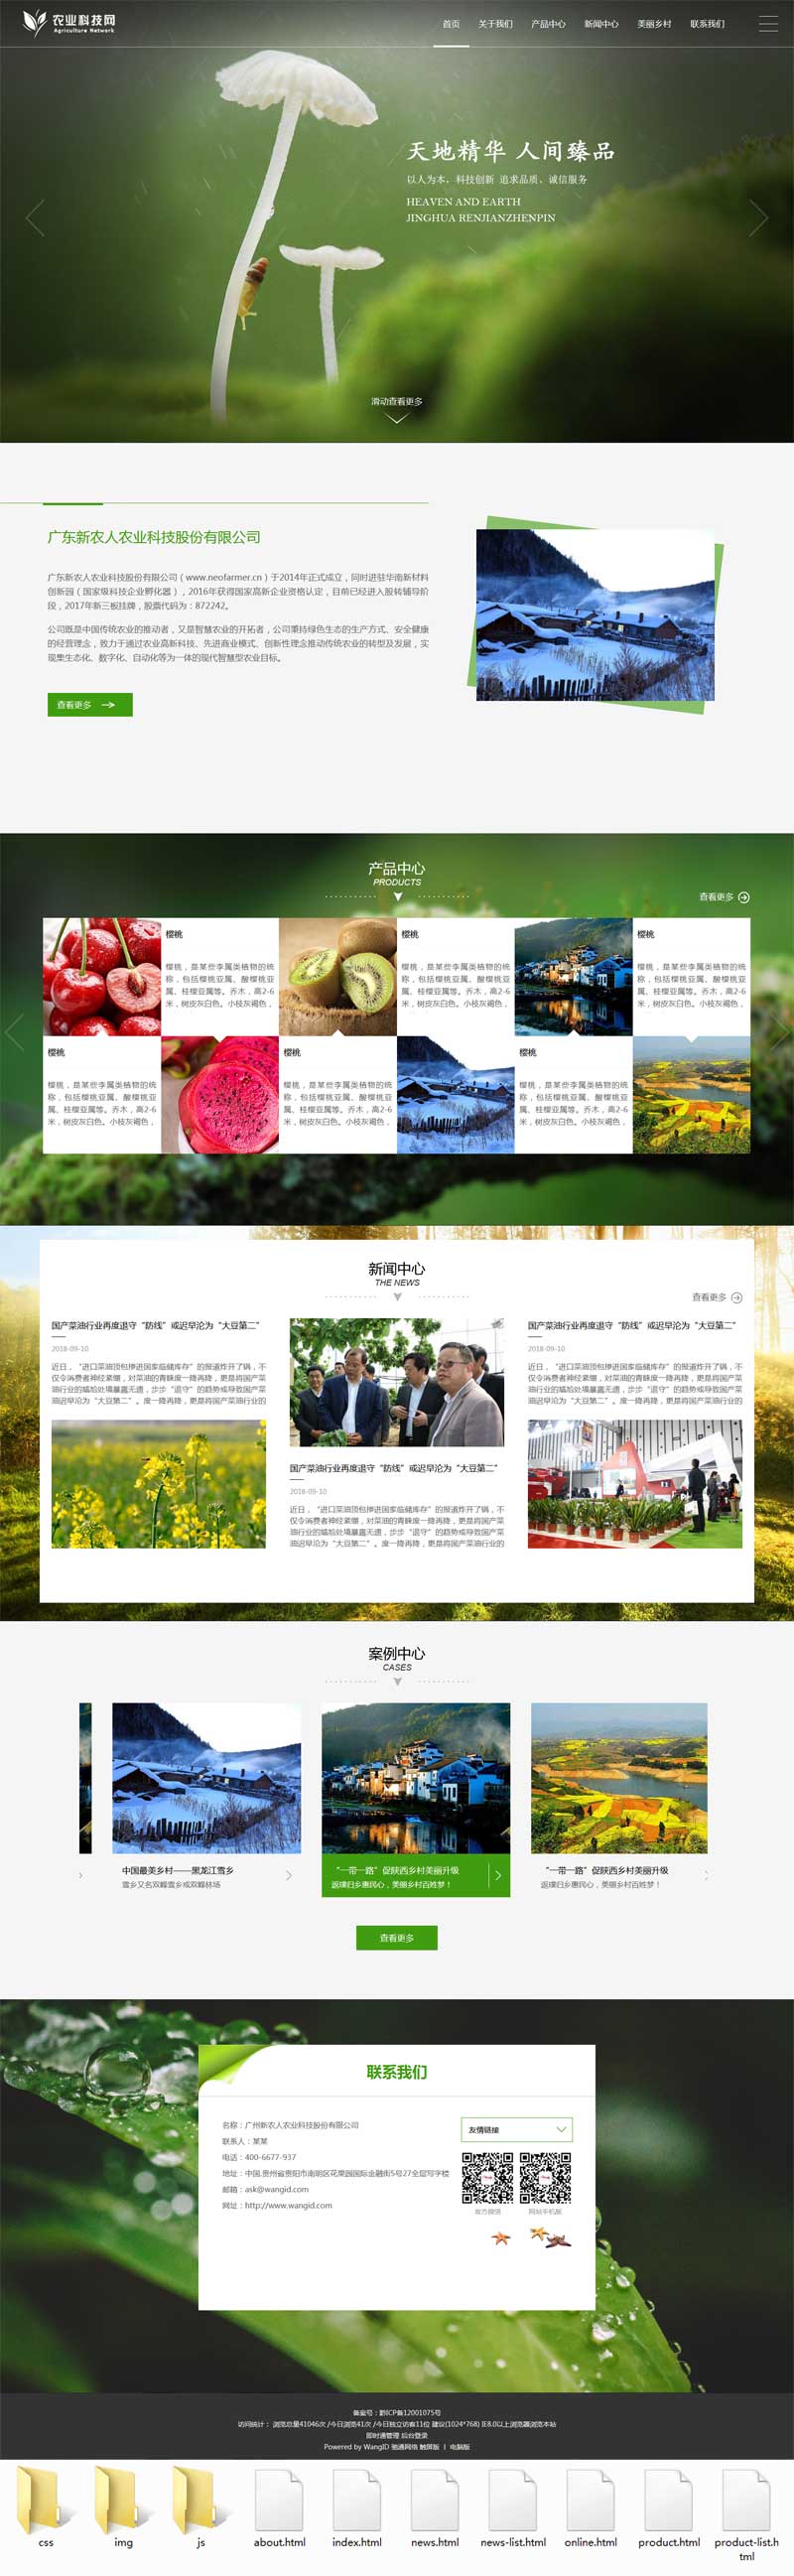 大气的农业科技公司网站响应式模板